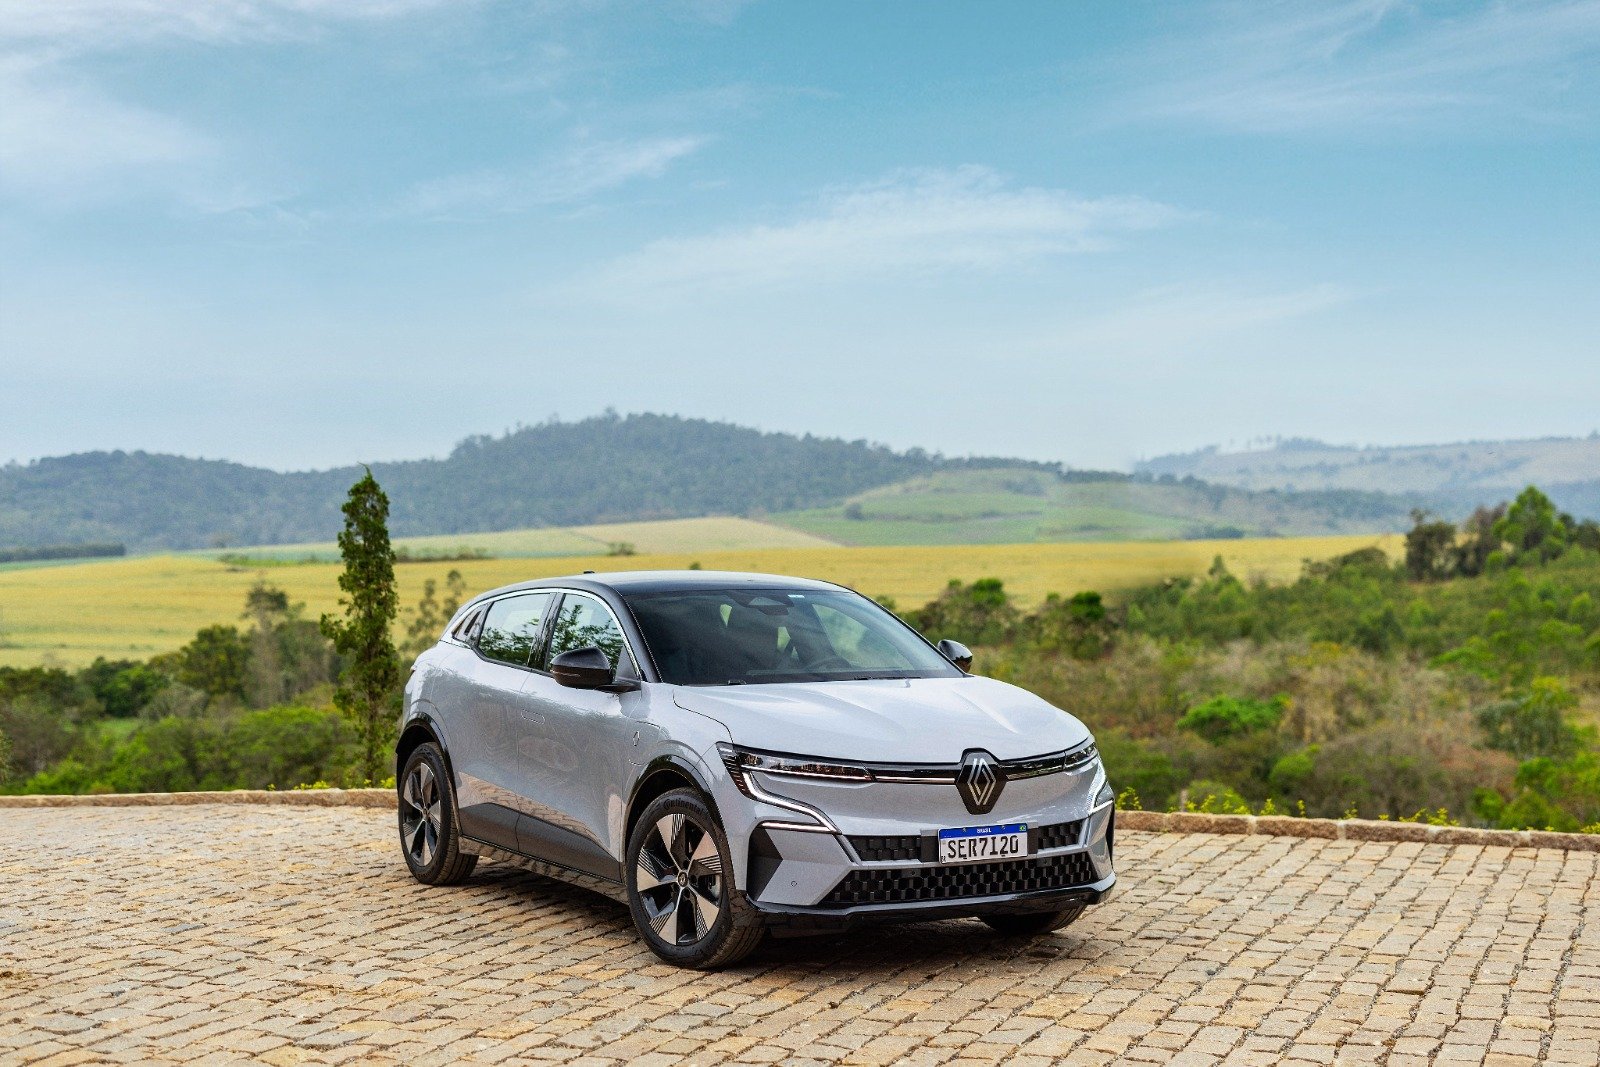 Modelo oferece até 337 km de autonomia e briga diretamente com Volvo EX30, com autonomia de 338 km ,ambos segundo o Inmetro  divulgação/Renault